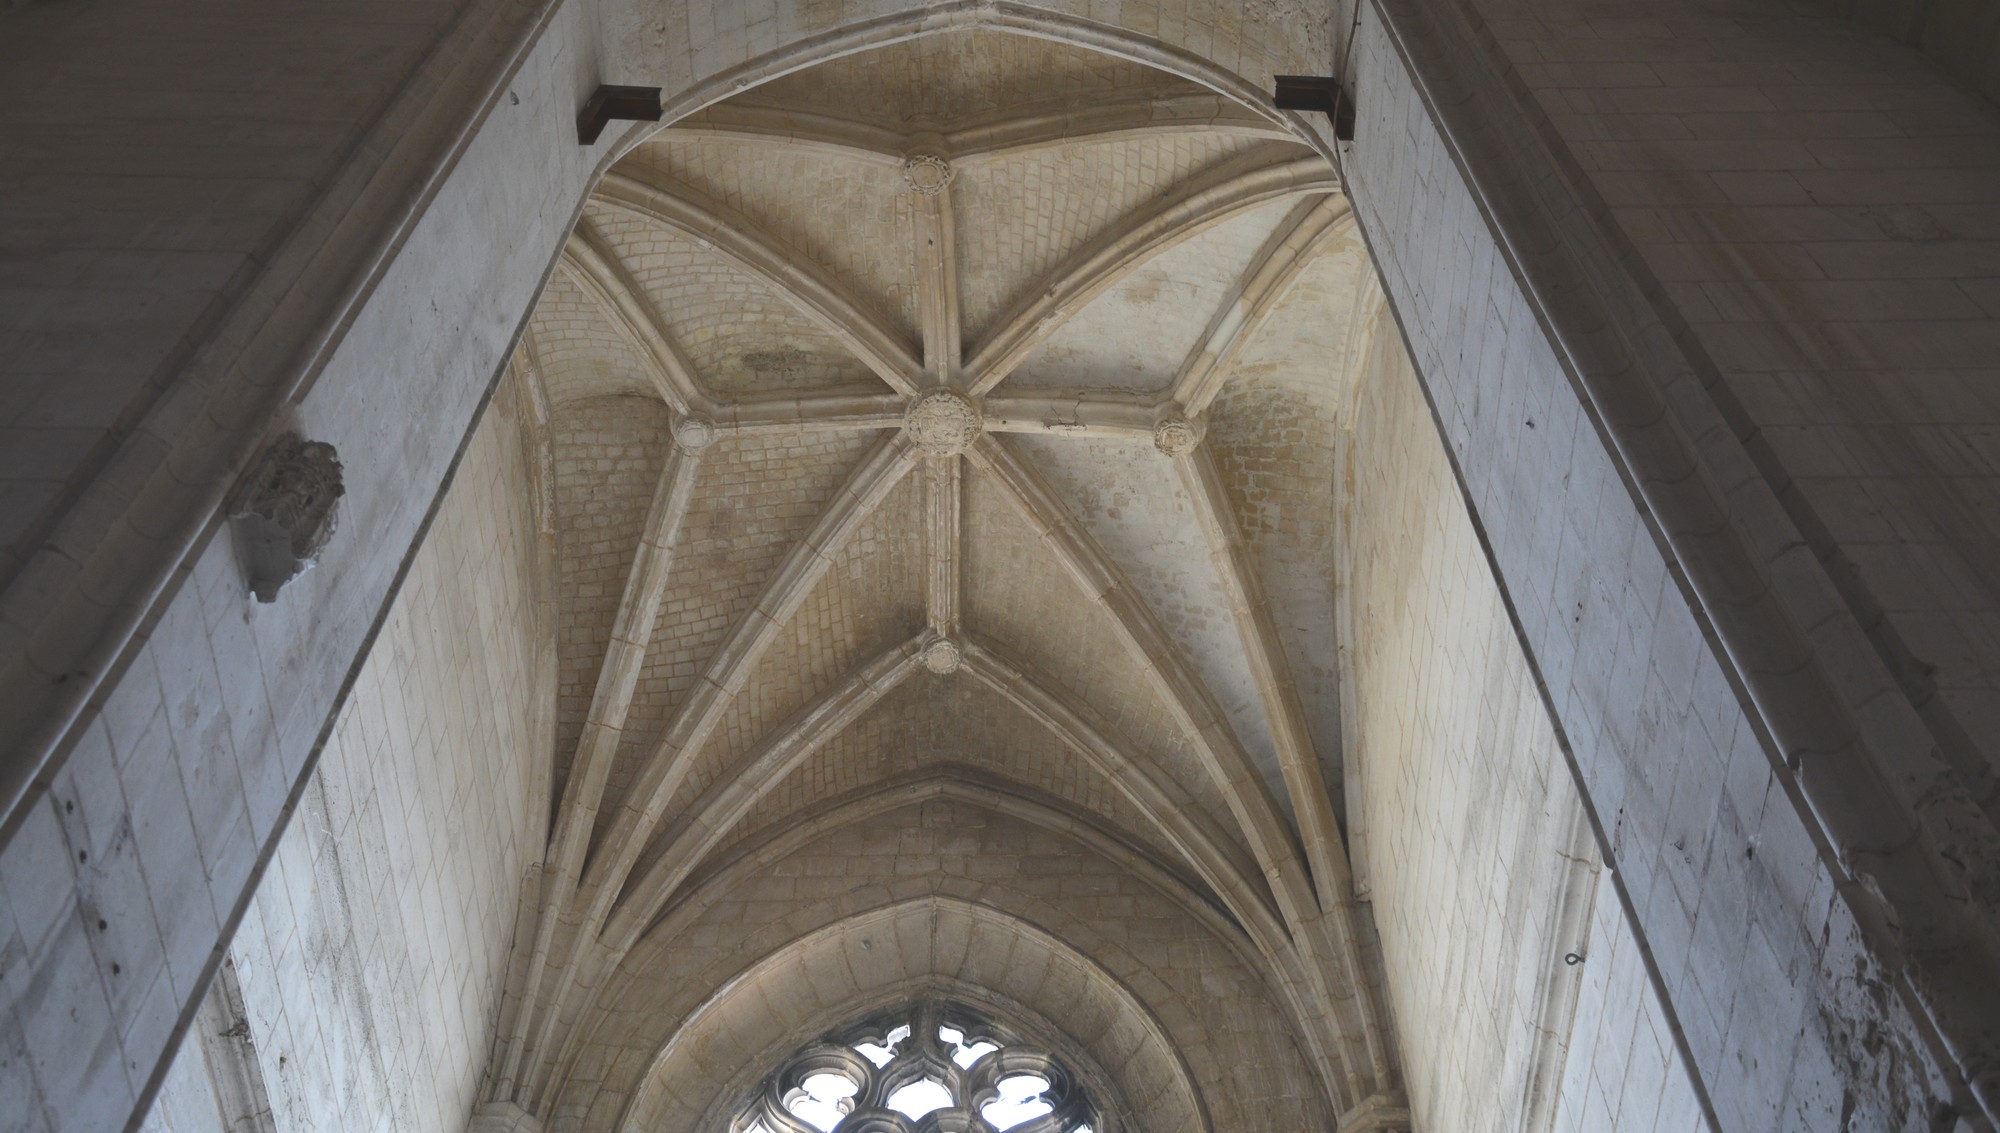 Cathédrale de Saint-Omer - chapelle Notre-Dame de pitié ogives et clés de voute